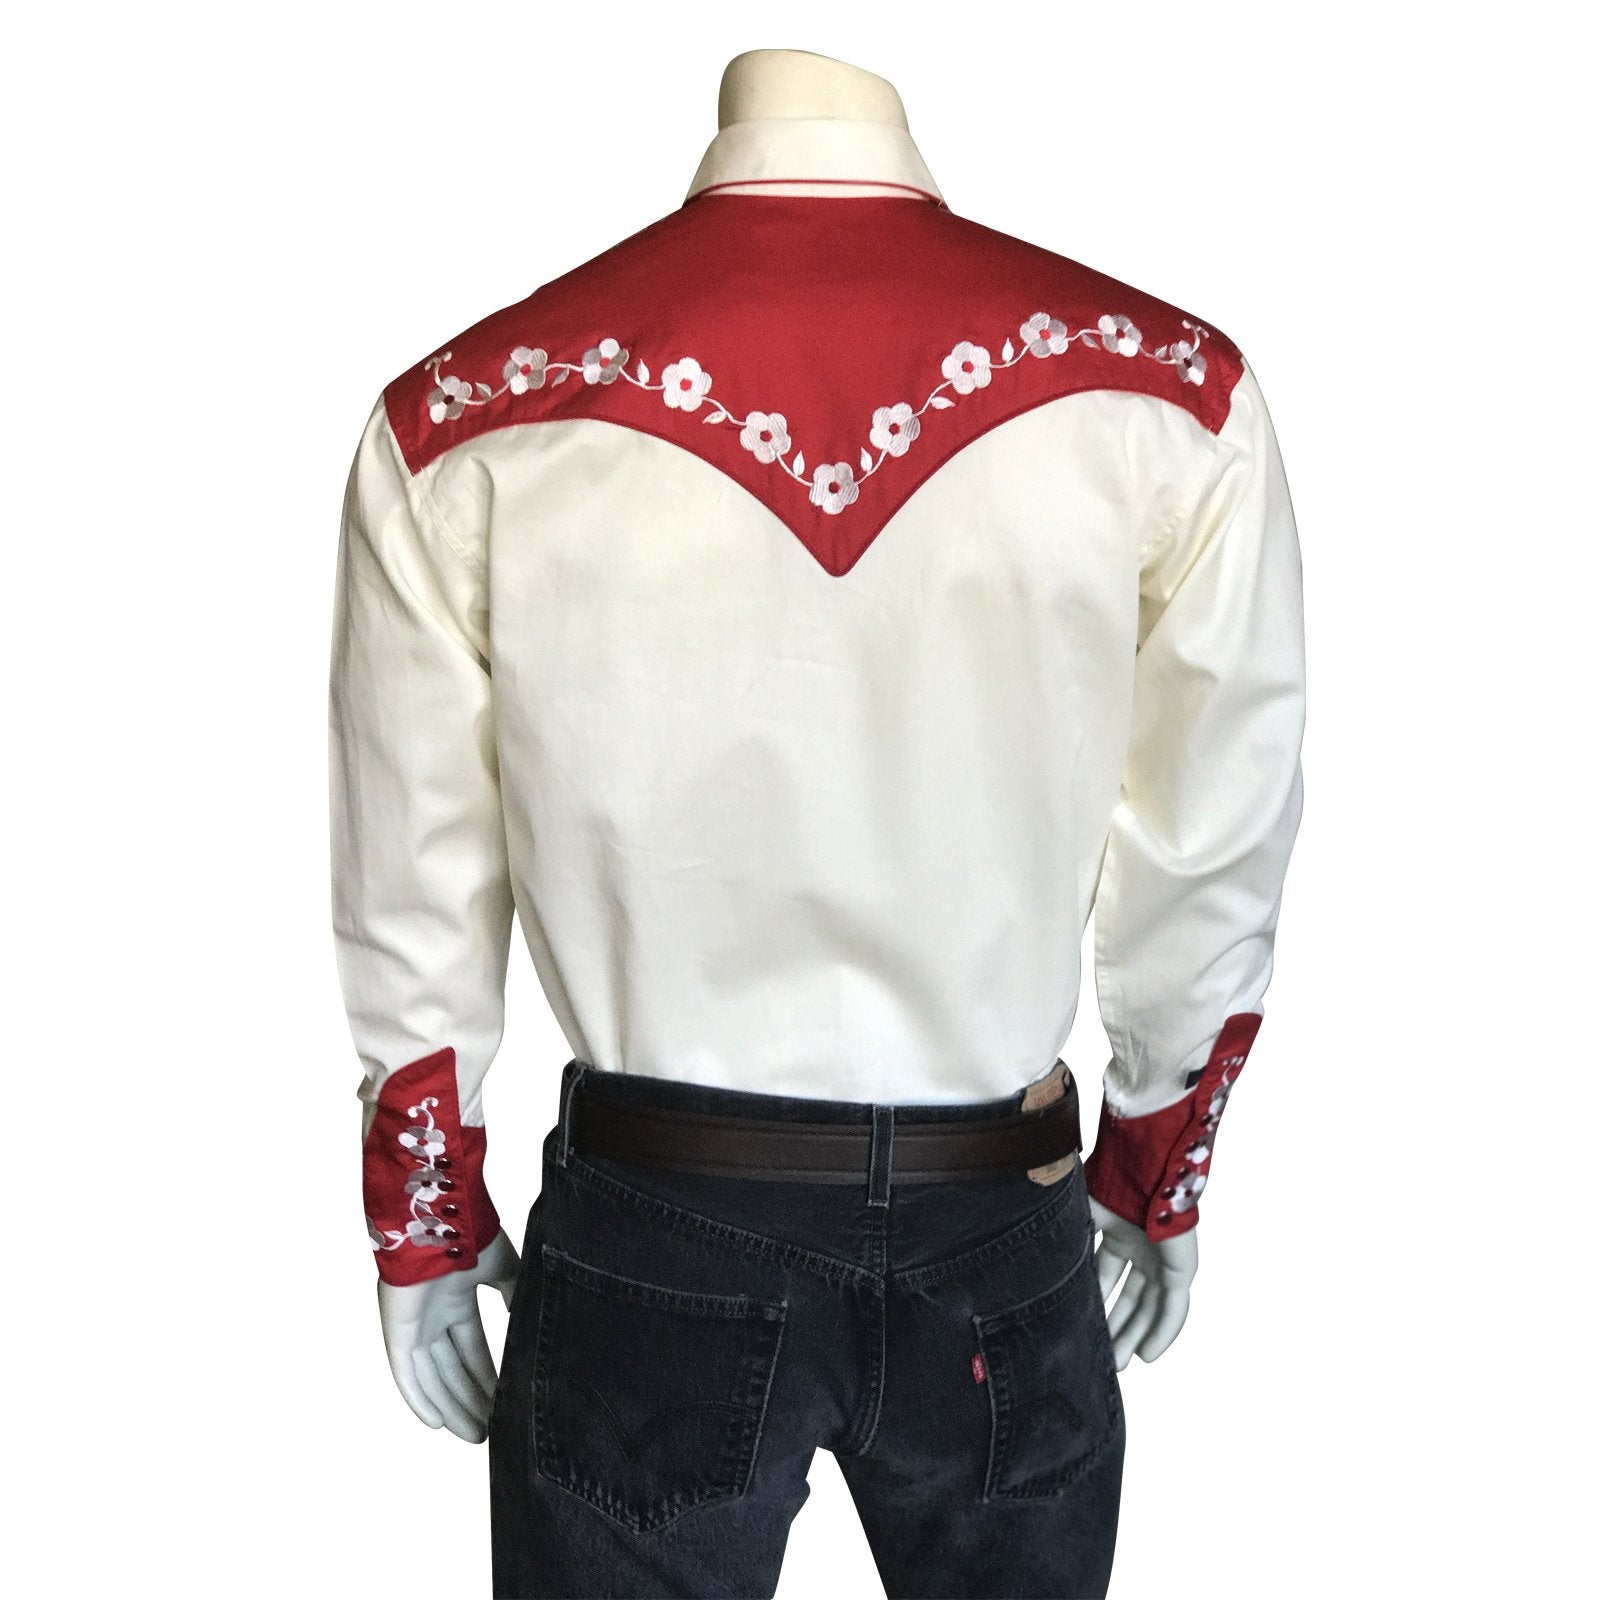 Vintage Inspired Western Shirt Men's Rockmount Ranch Wear Elvis Loving You Back Red